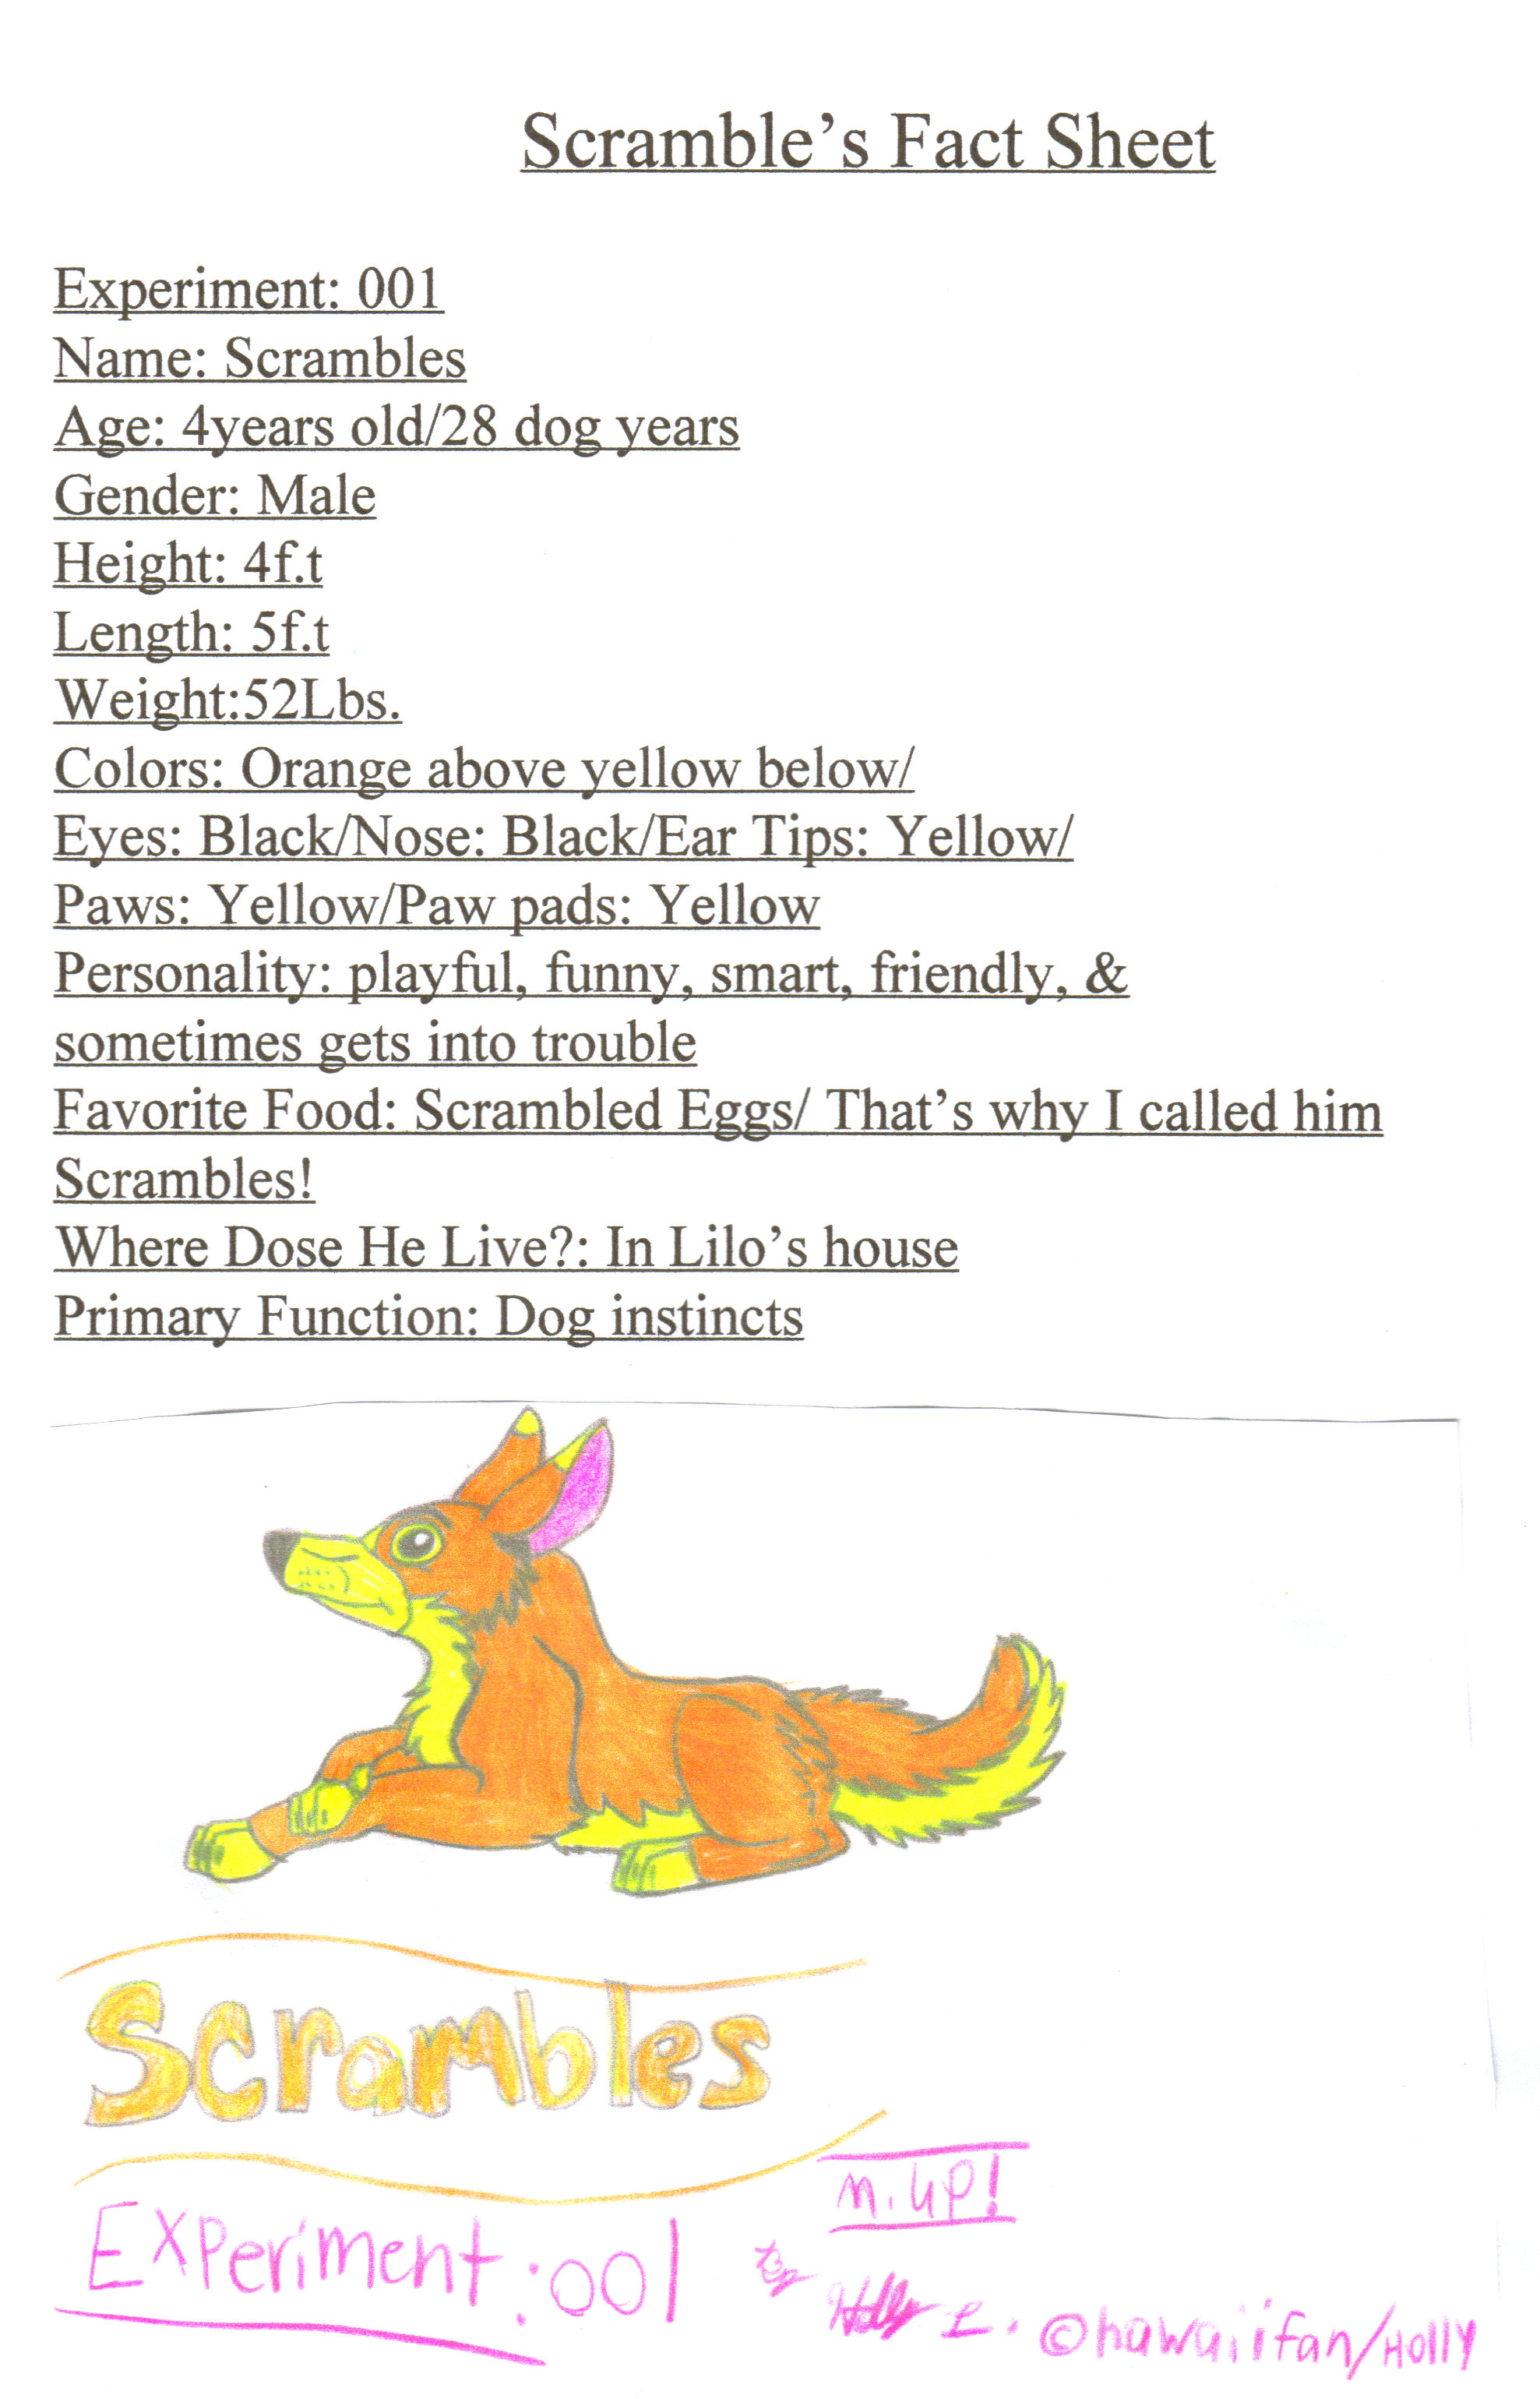 Scramble's Fact Sheet by hawaiifan